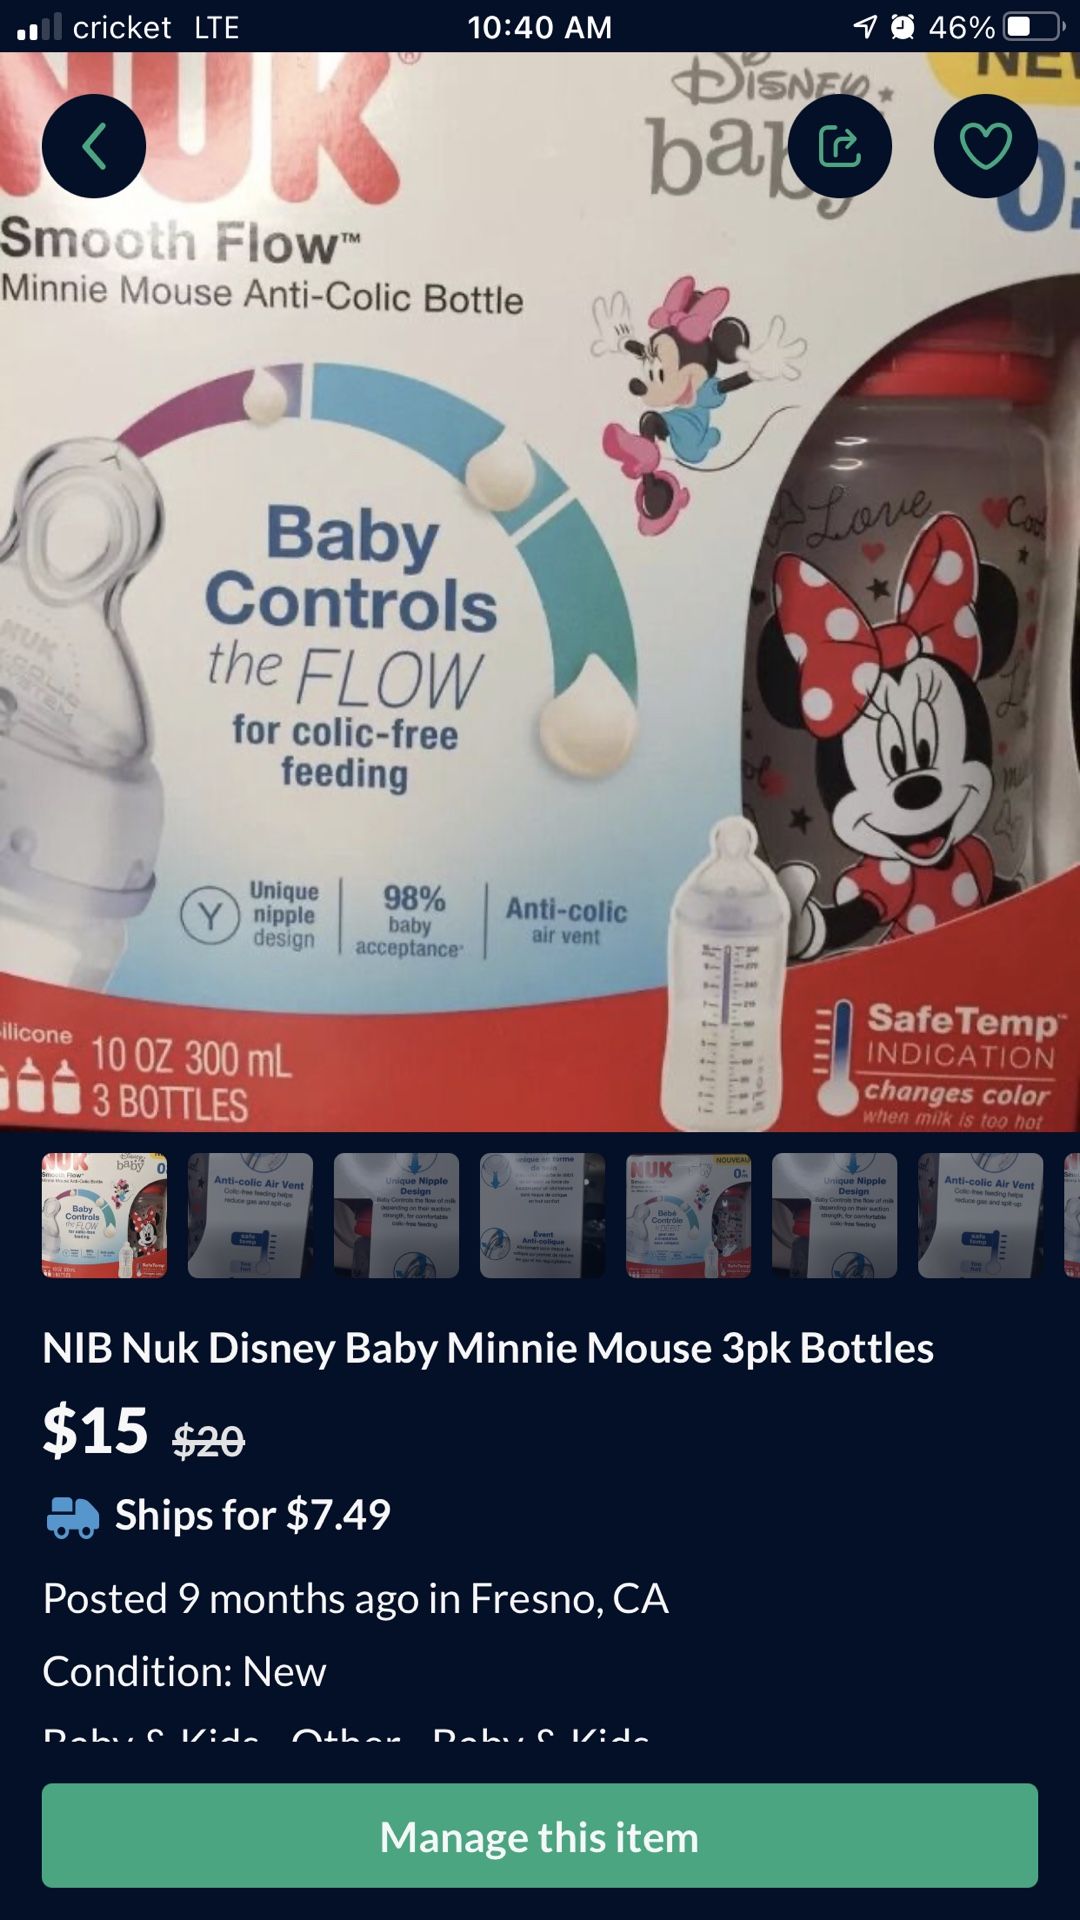 NIB Nuk Disney Baby Minnie Mouse 3pk Bottles